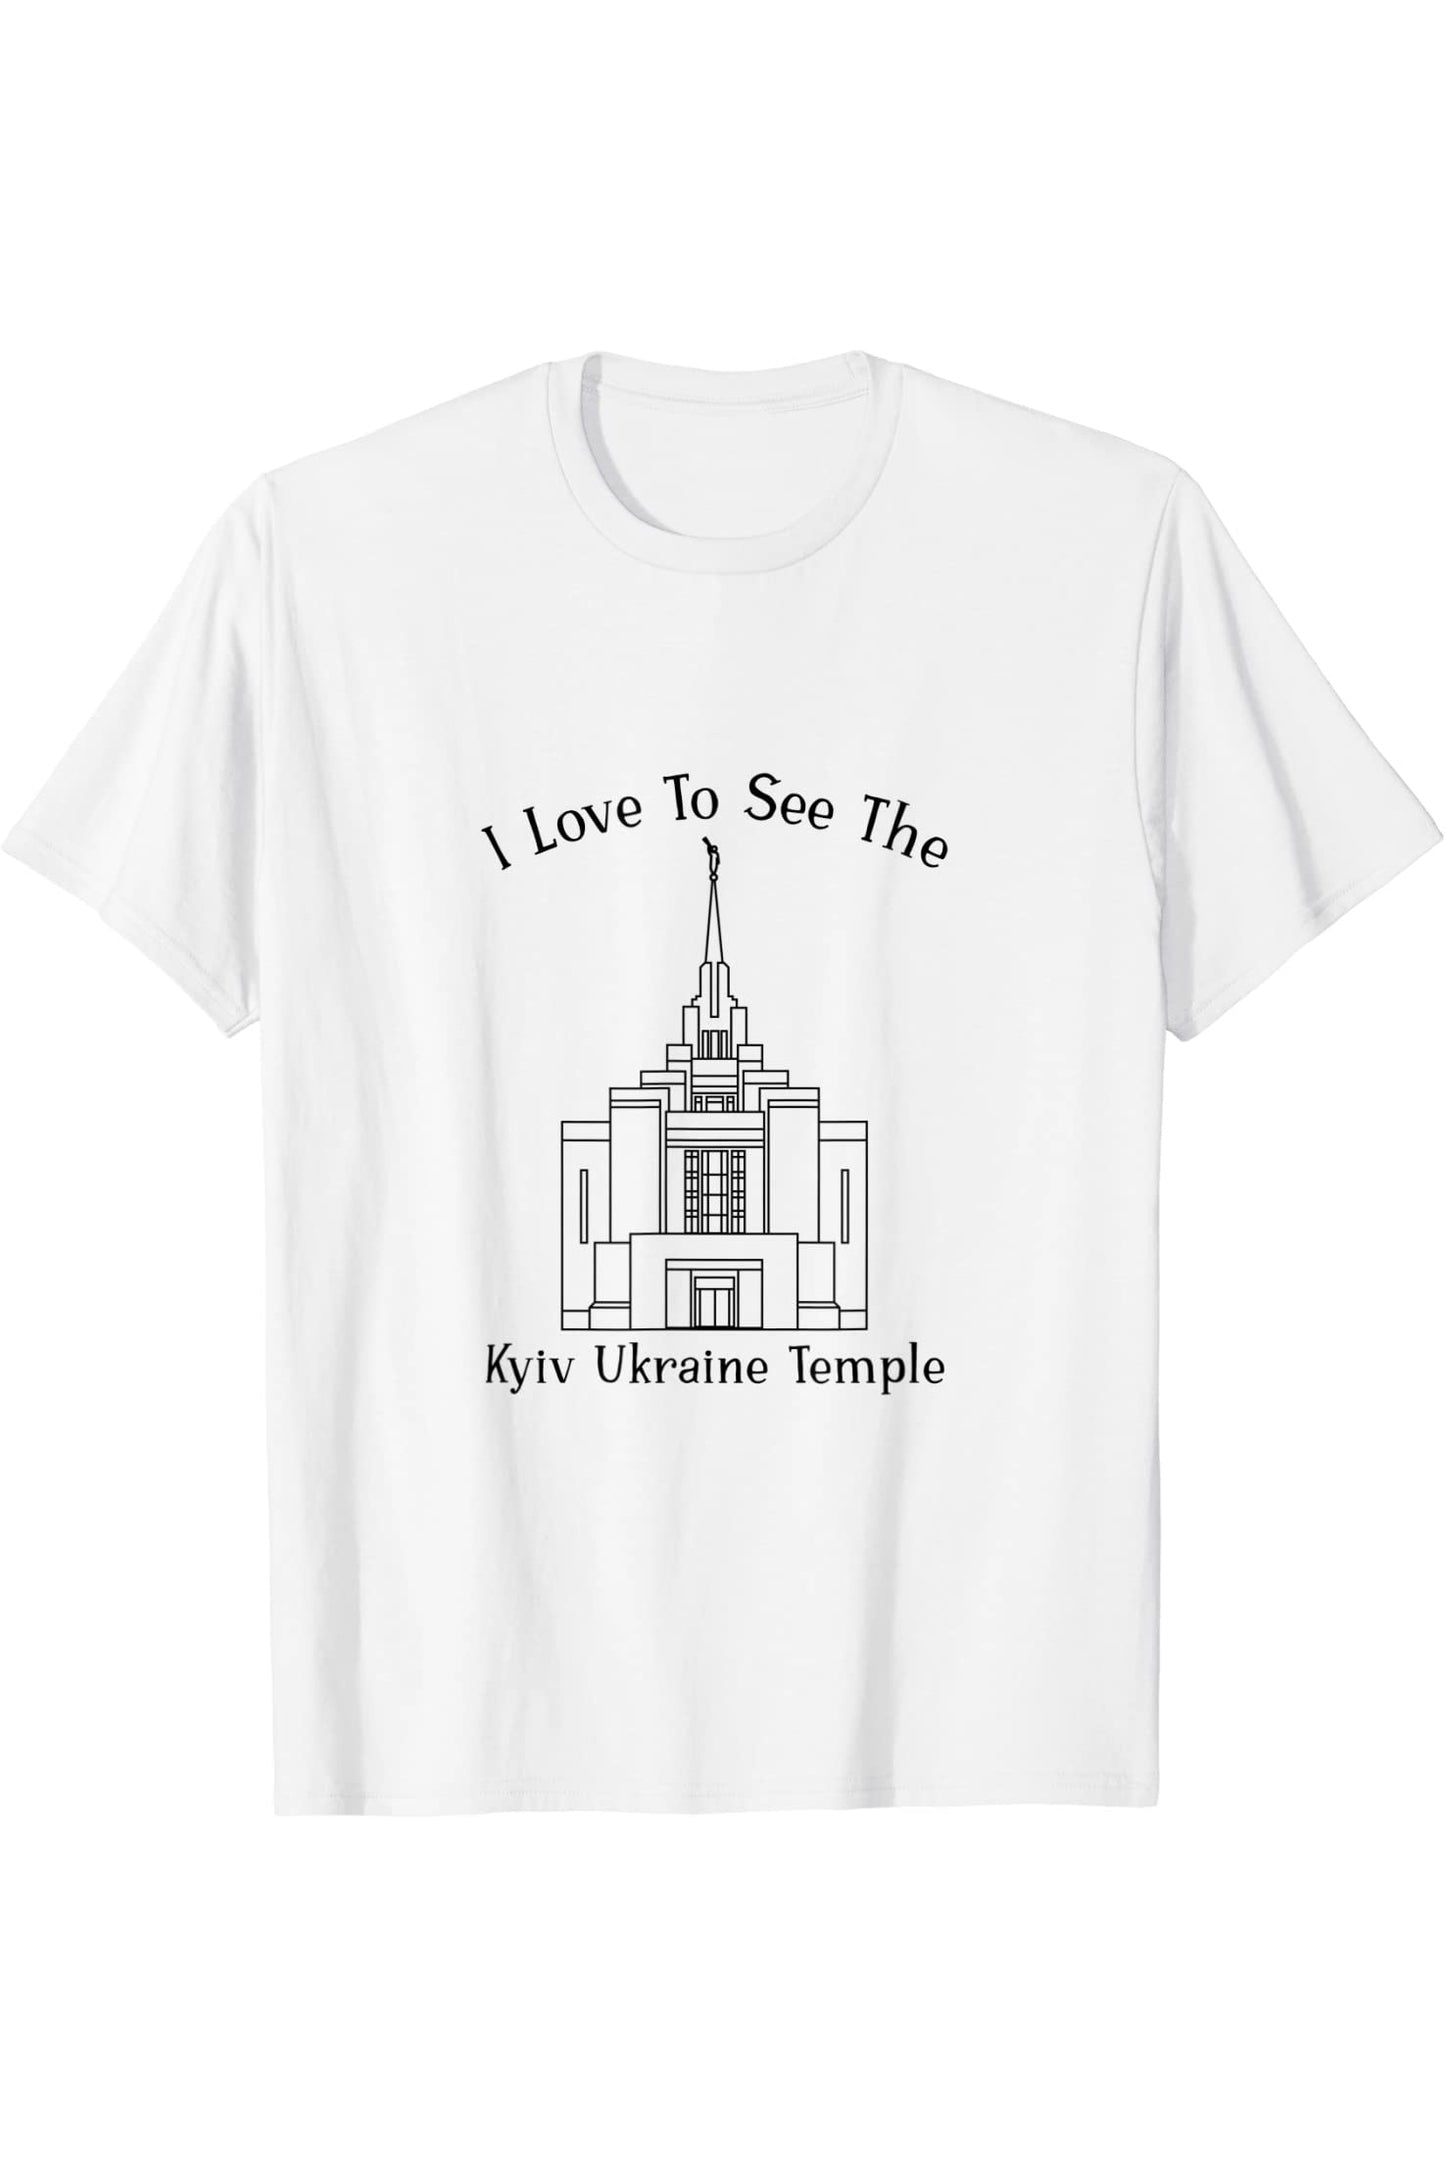 Kyiv Ucraina Temple, amo vedere il mio tempio, felice T-Shirt